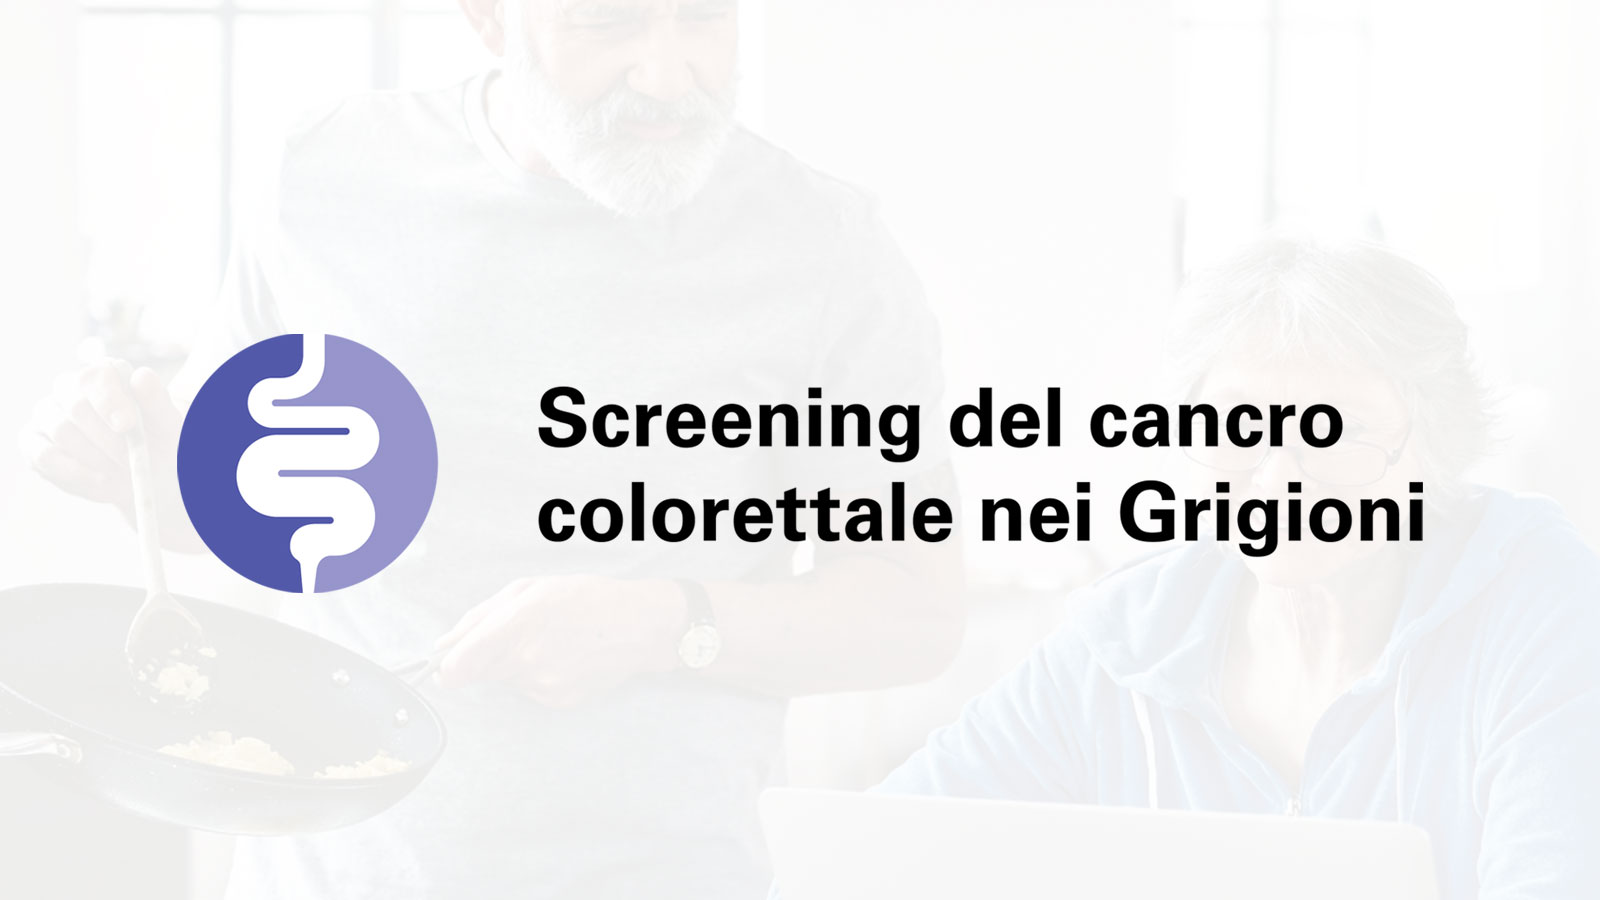 Lo screening del cancro colorettale può salvare la vita - anche la Sua.